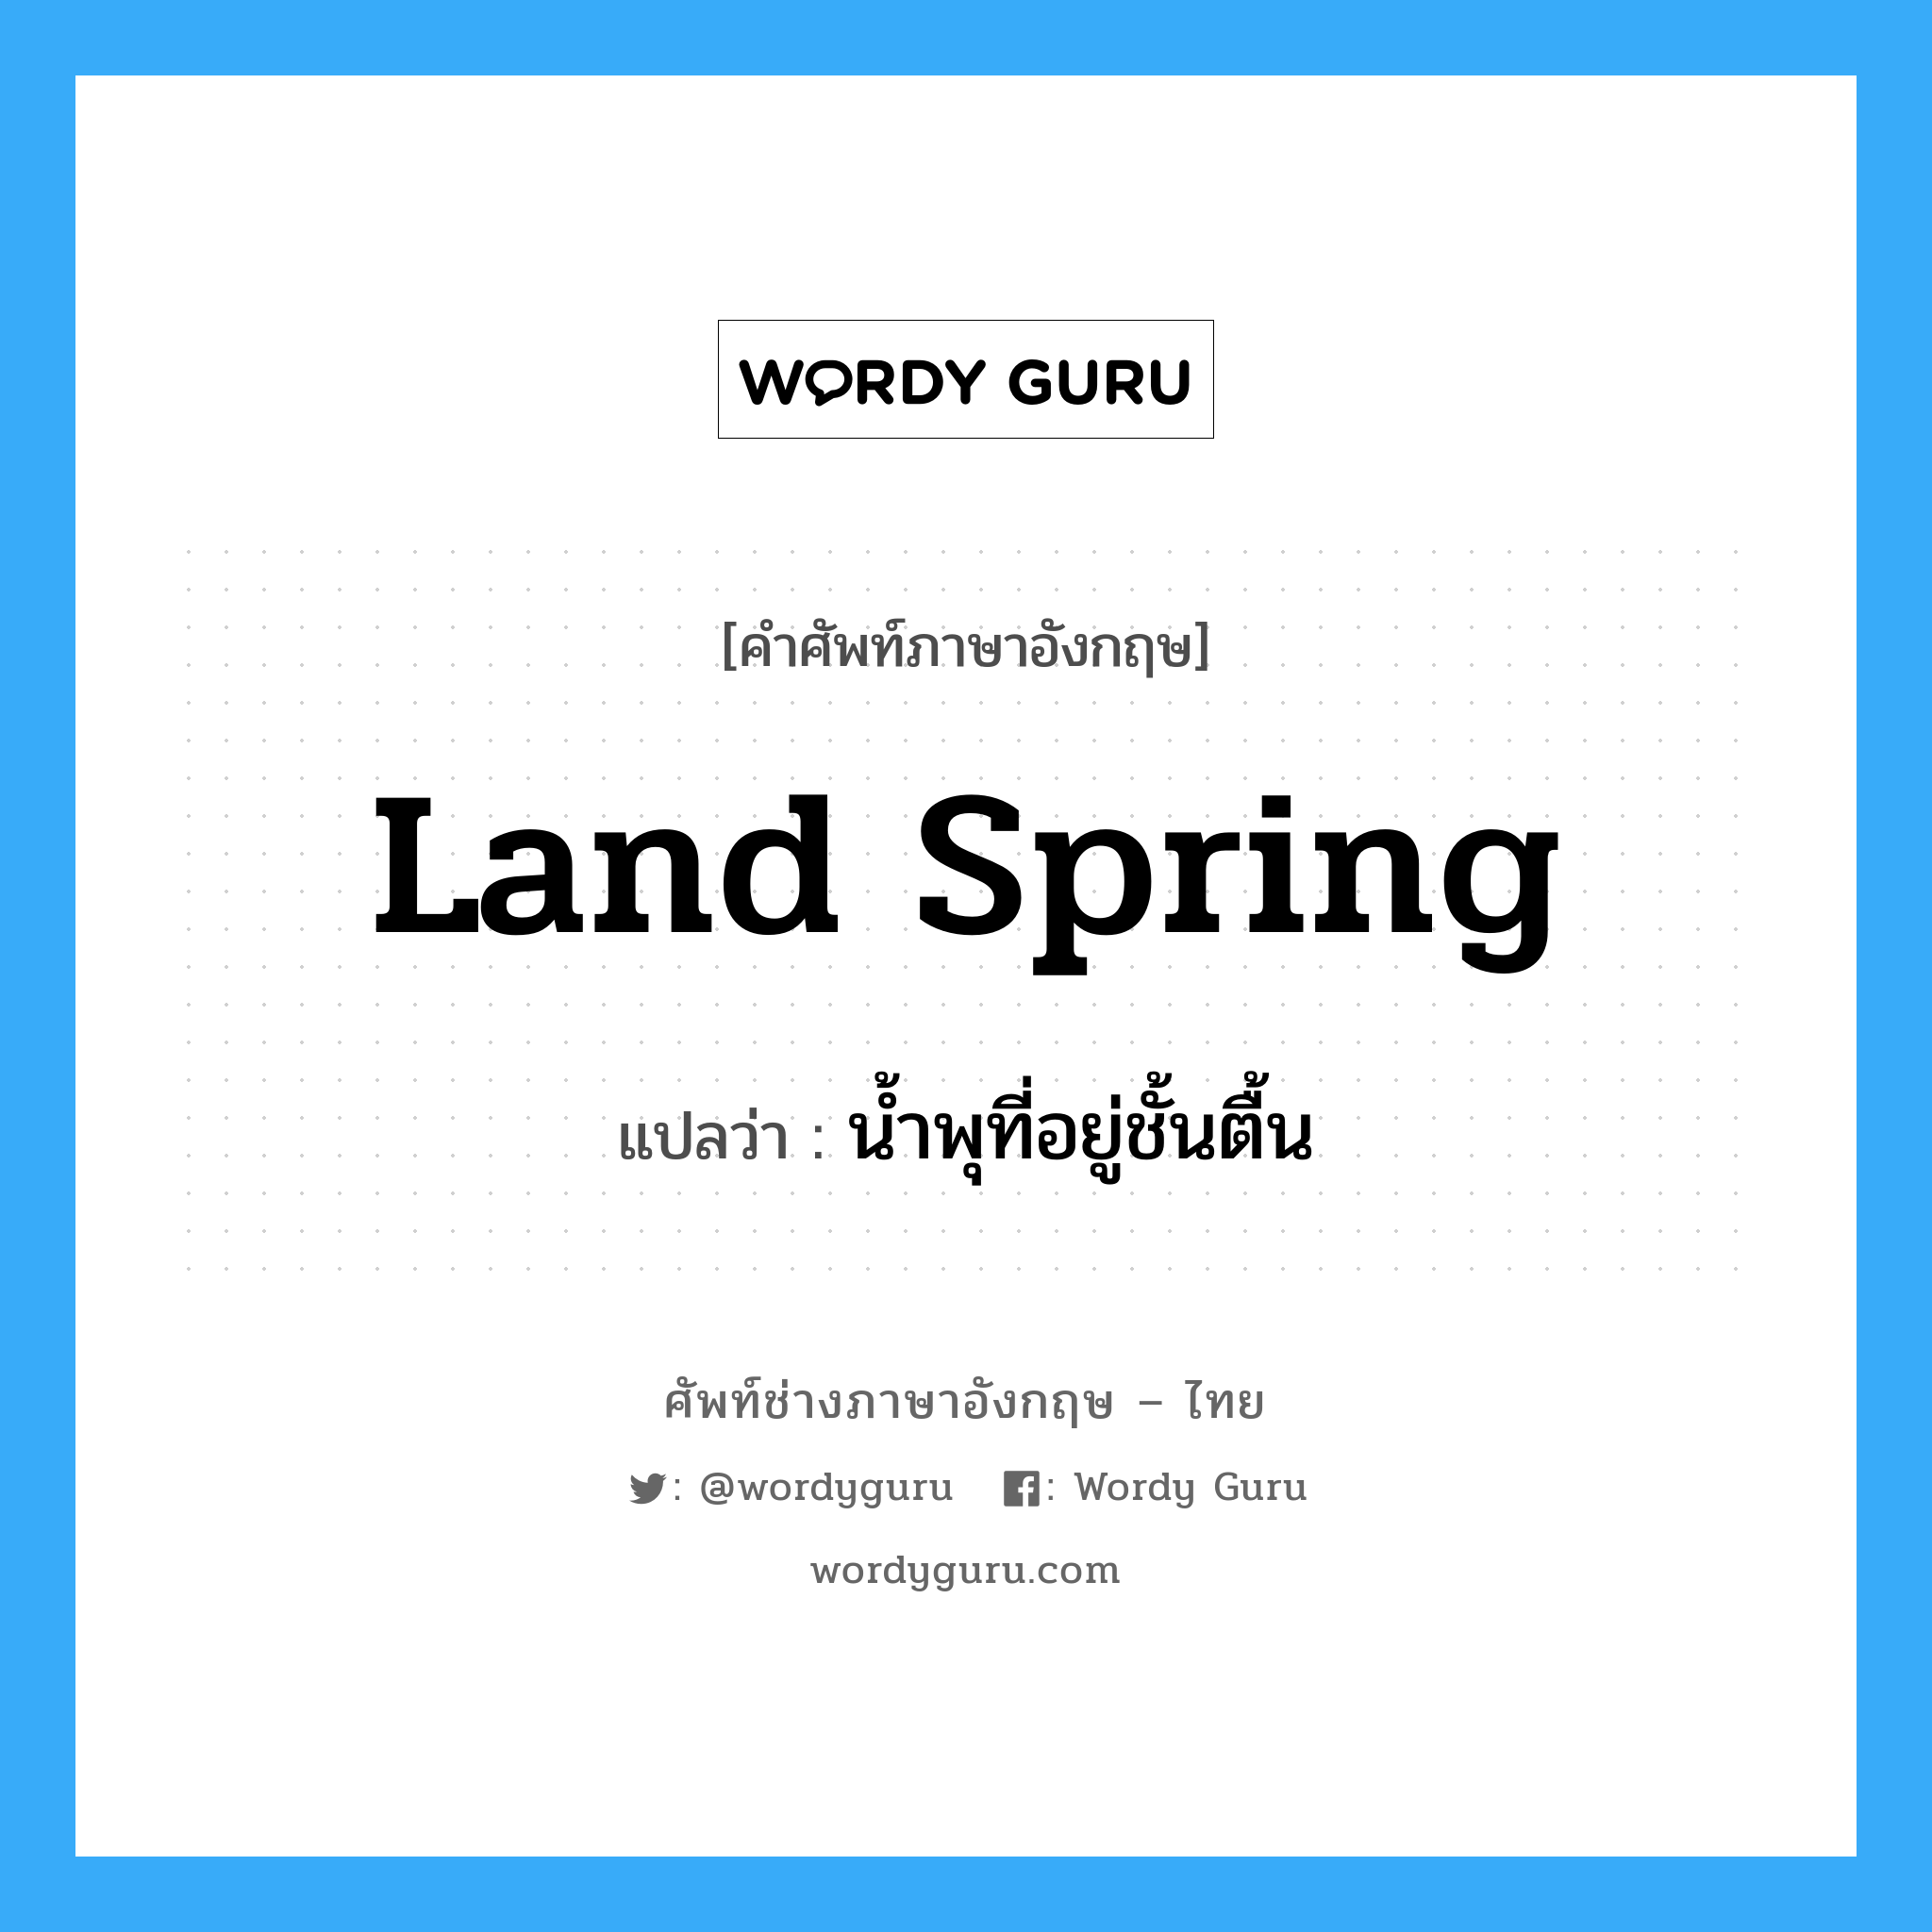 land spring แปลว่า?, คำศัพท์ช่างภาษาอังกฤษ - ไทย land spring คำศัพท์ภาษาอังกฤษ land spring แปลว่า น้ำพุที่อยู่ชั้นตื้น